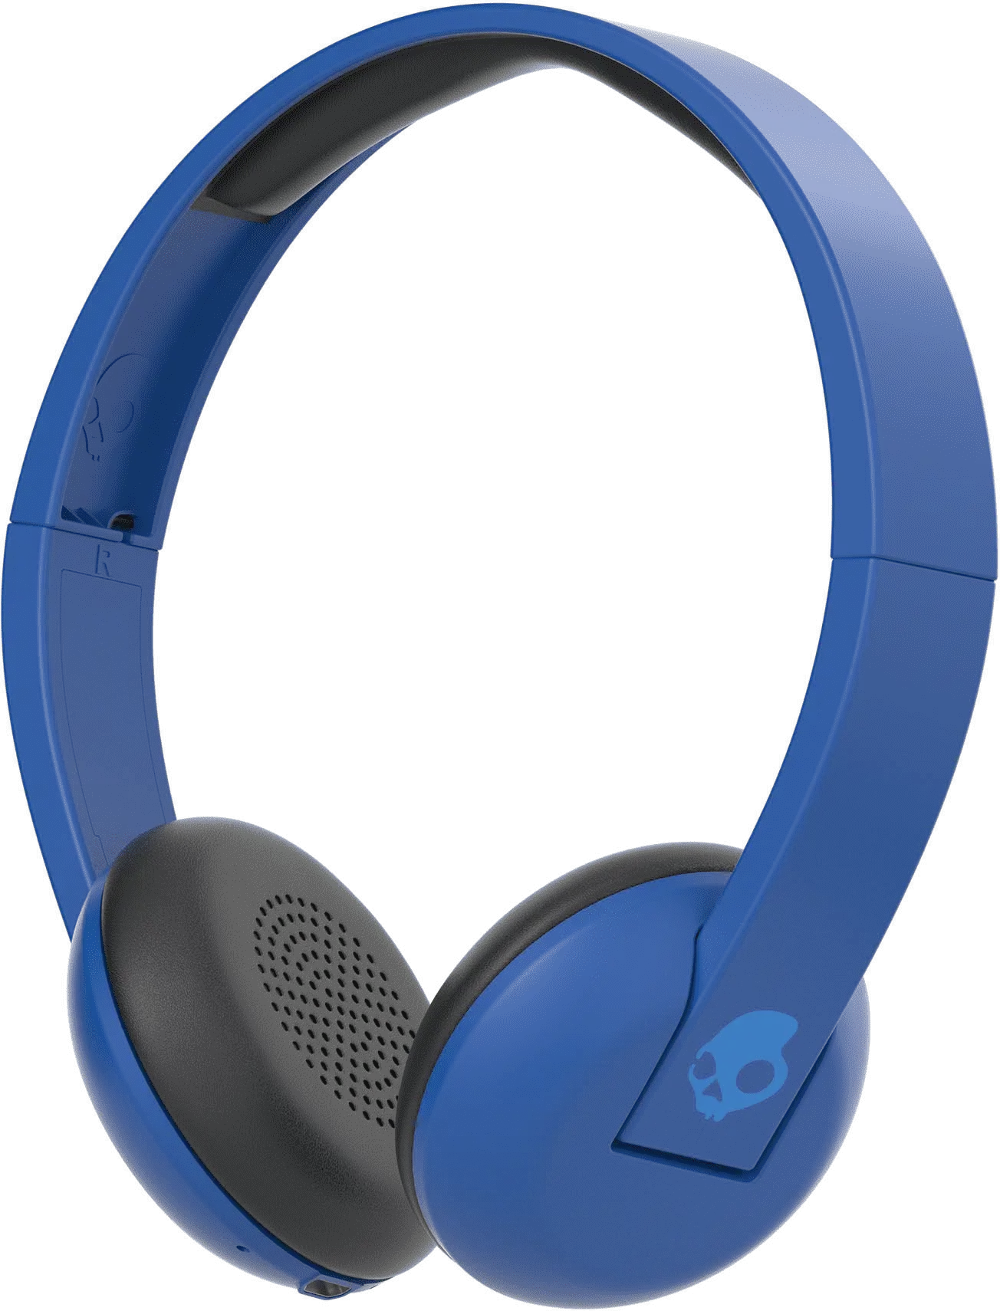 S5URJW-546,UPROR,BLU Skullcandy Blue Uproar Wireless Headphone-1